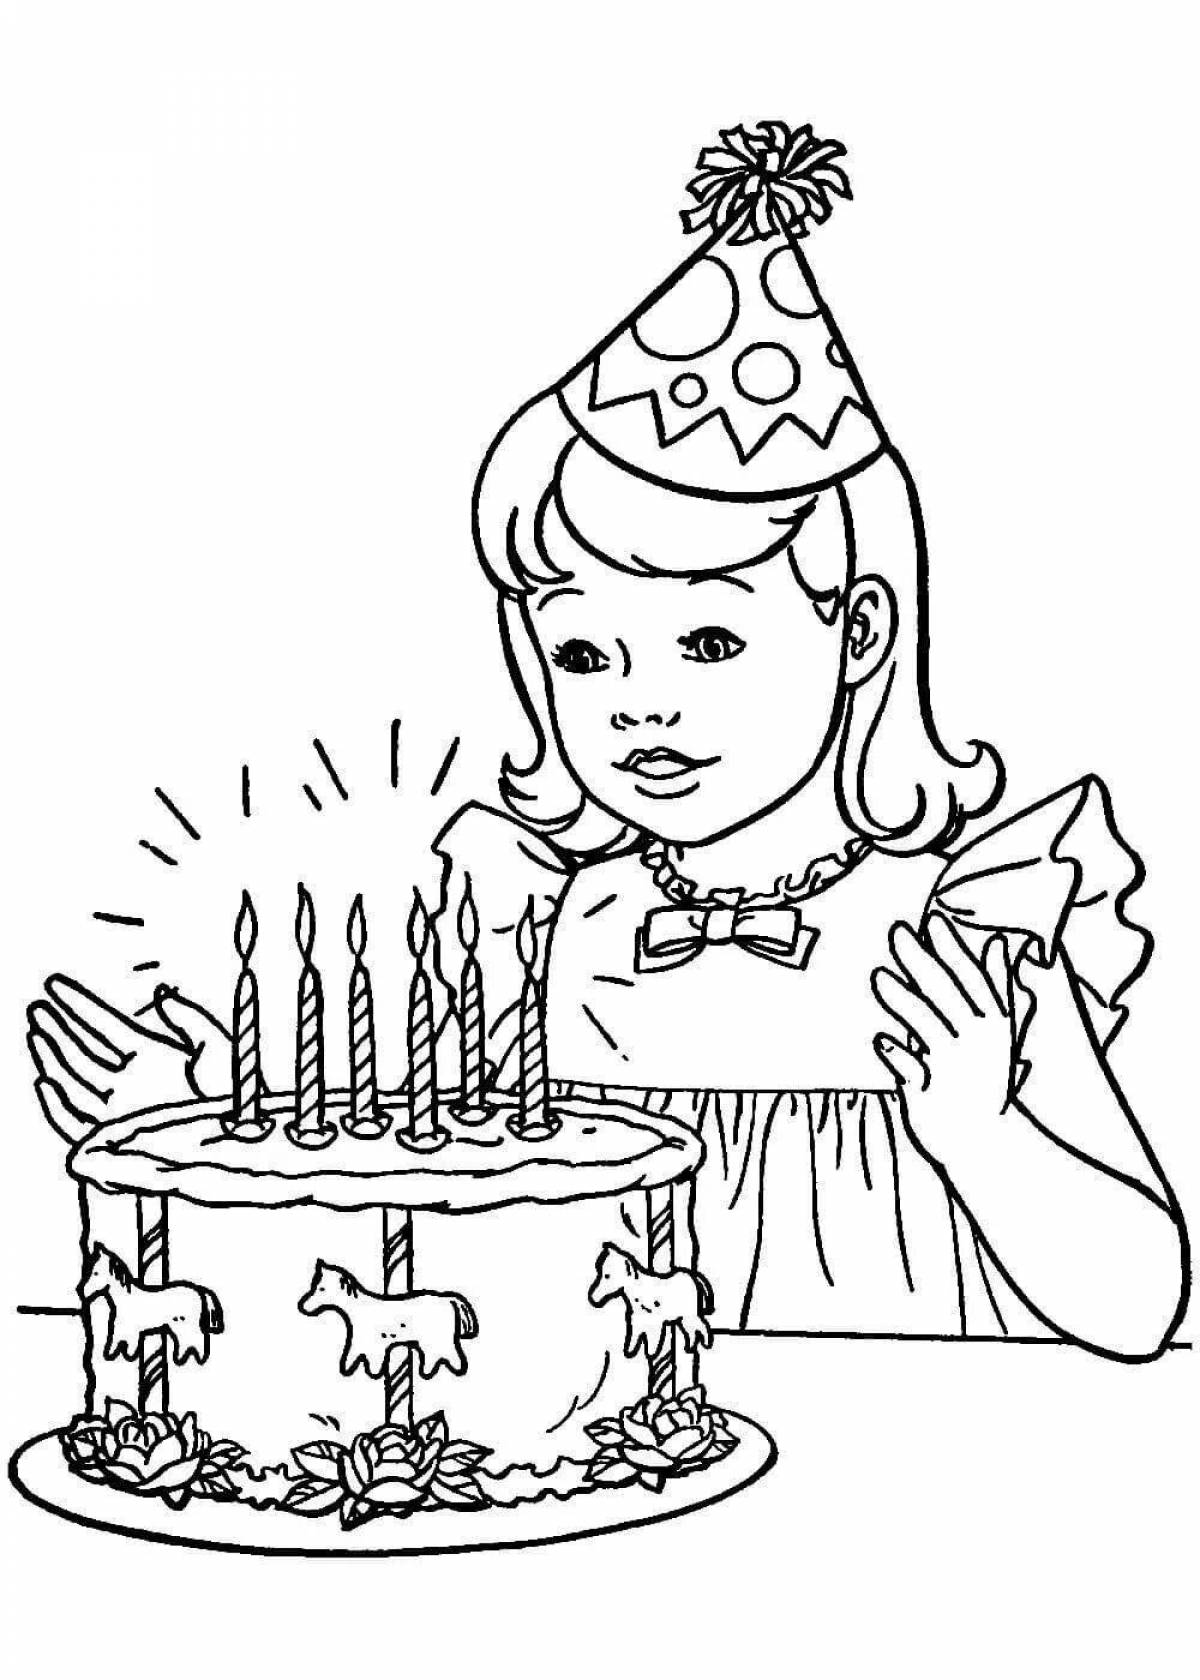 Рисовать рисунки на день рождения. Раскраска "с днем рождения!". Рисунок на день рождения. Раскаскина день рождения. Рисунок на деньрожденея.